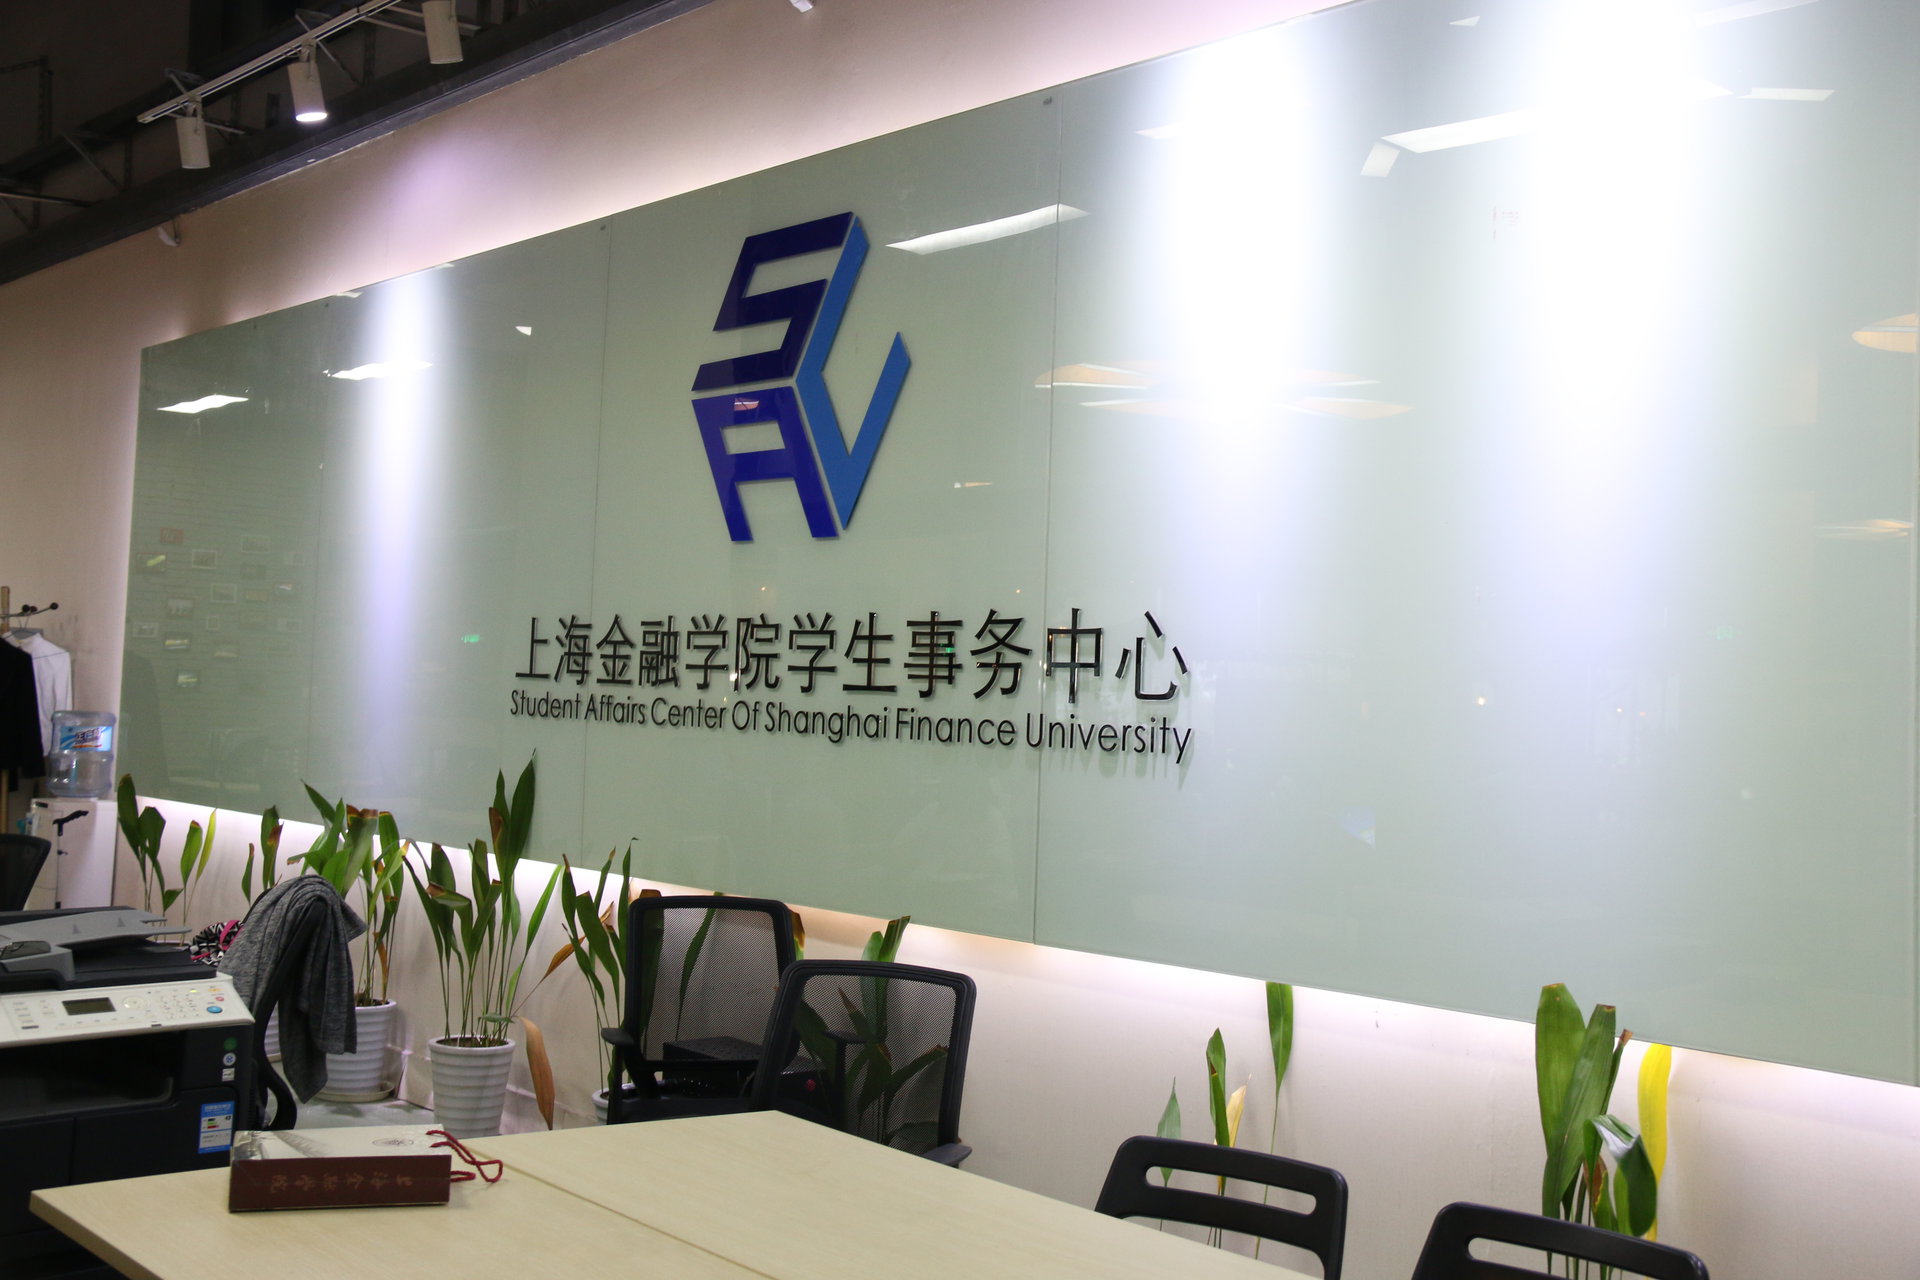 上海立信會計金融學院學生事務中心